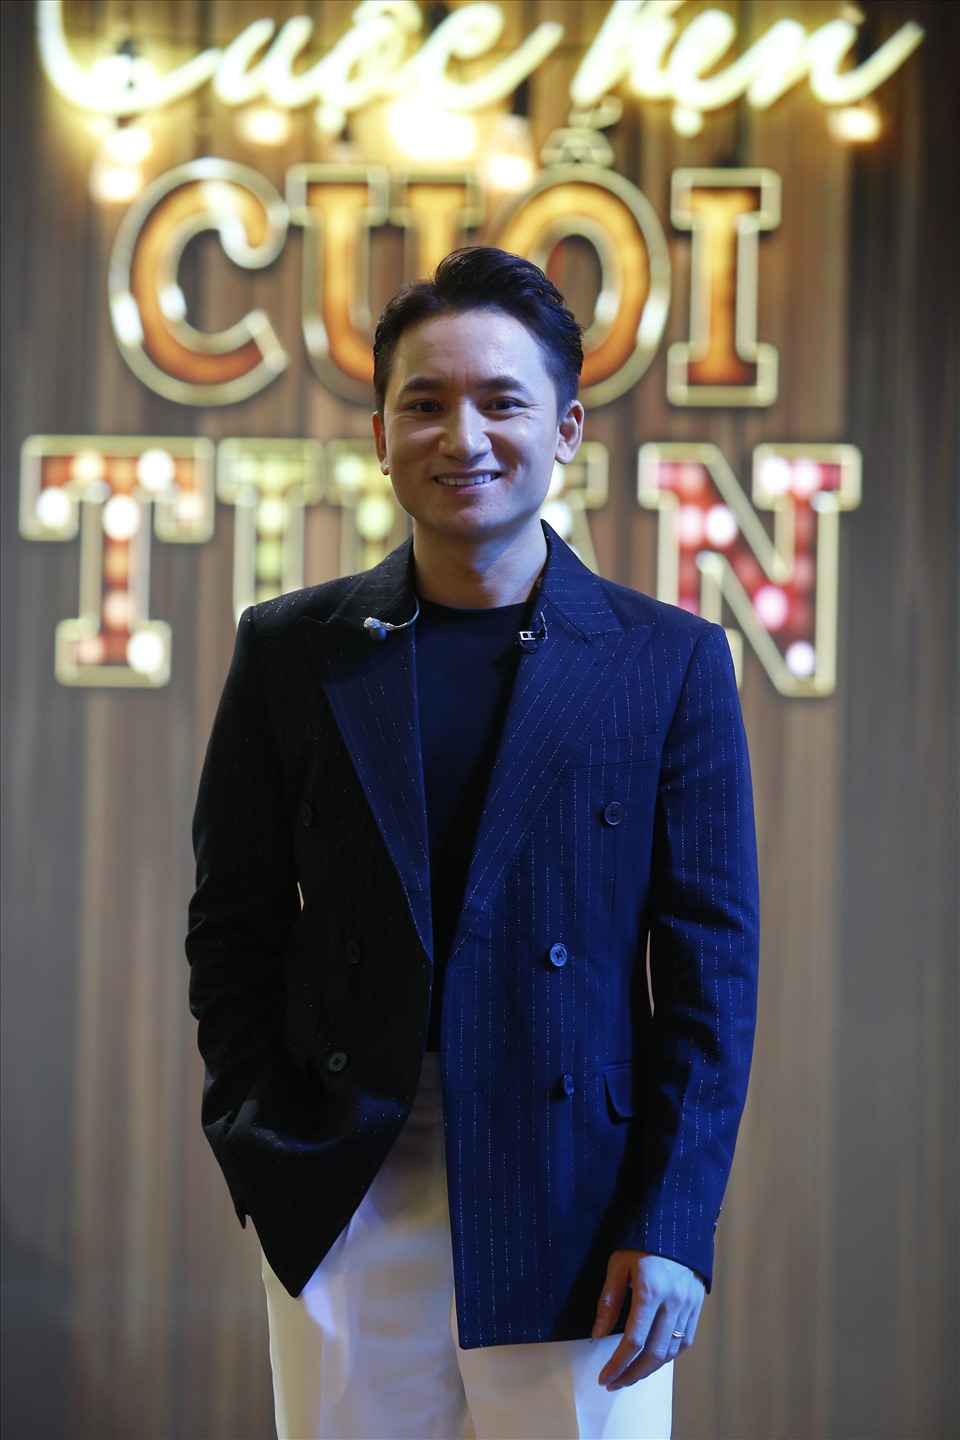 Nhạc sĩ - ca sĩ Phan Mạnh Quỳnh hào hứng khi tham gia chương trình “Cuộc hẹn cuối tuần“. Ảnh: VTV